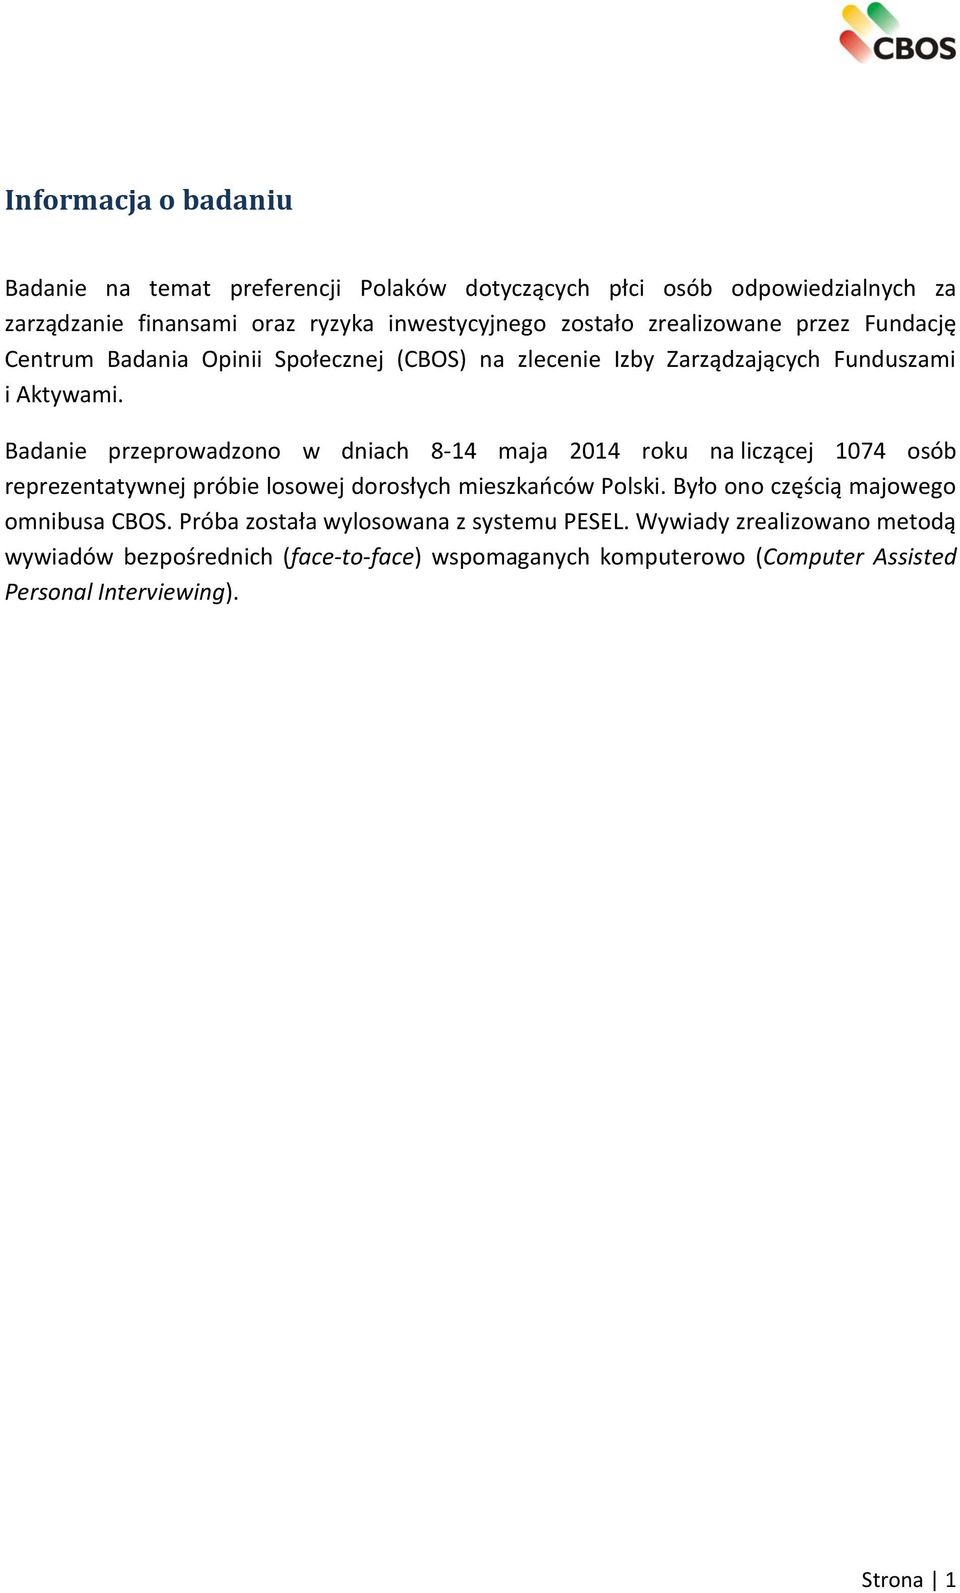 Badanie przeprowadzono w dniach 8-14 maja 2014 roku na liczącej 1074 osób reprezentatywnej próbie losowej dorosłych mieszkańców Polski.